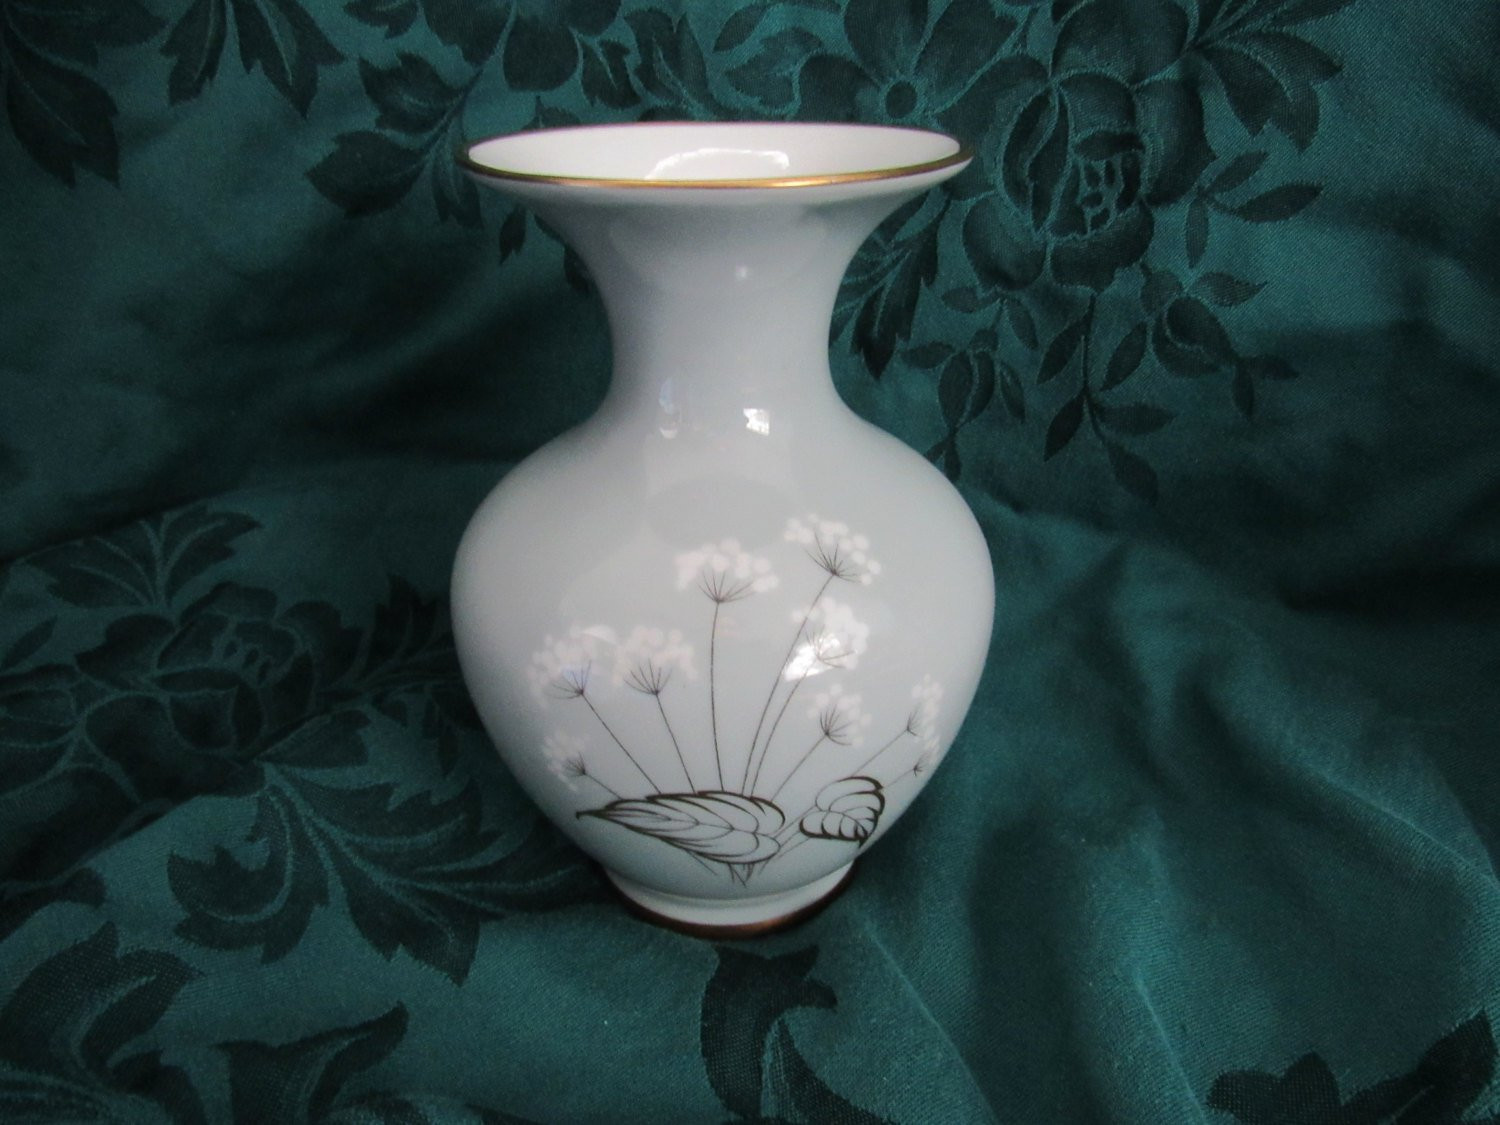 15 Wonderful Royal Satsuma Vase 2024 free download royal satsuma vase of hertel jacob porzellan vase bavaria germany porcelain flower etsy within image 0